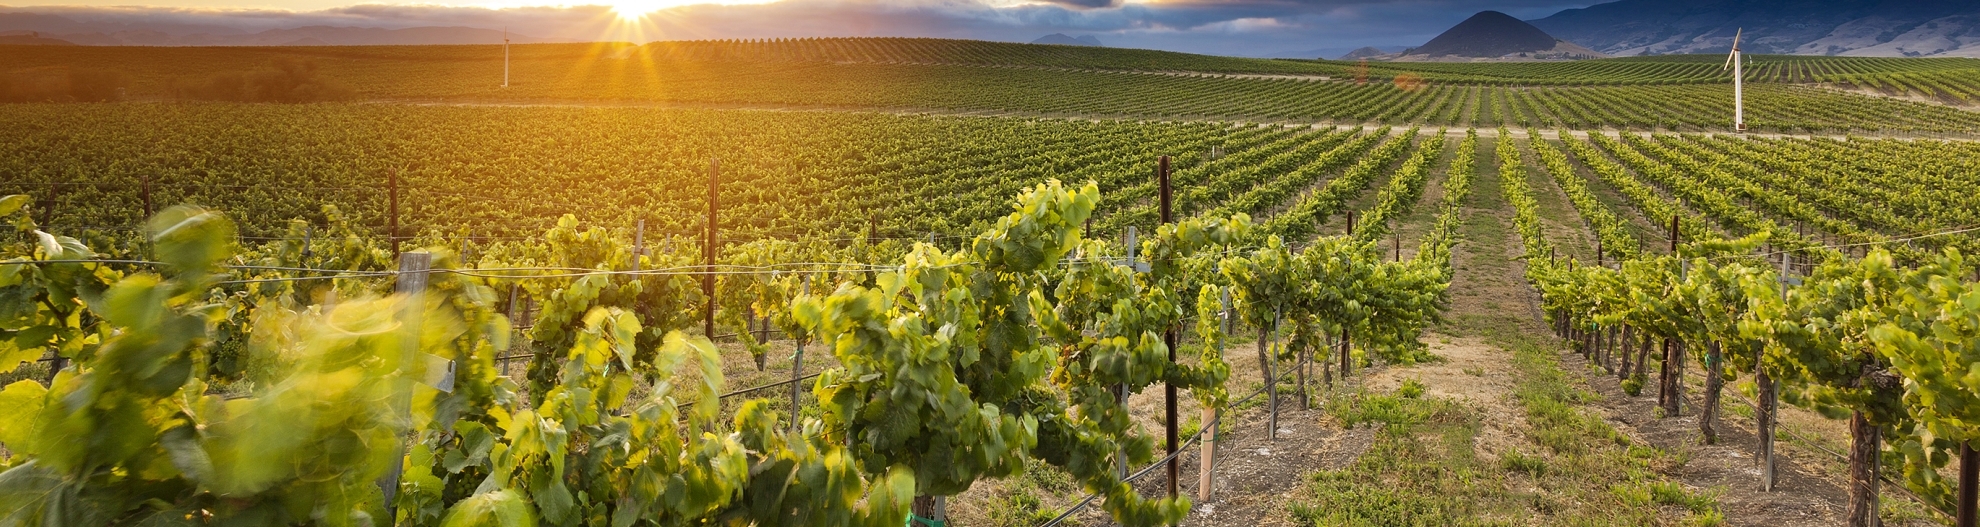 A vineyard at sunrise